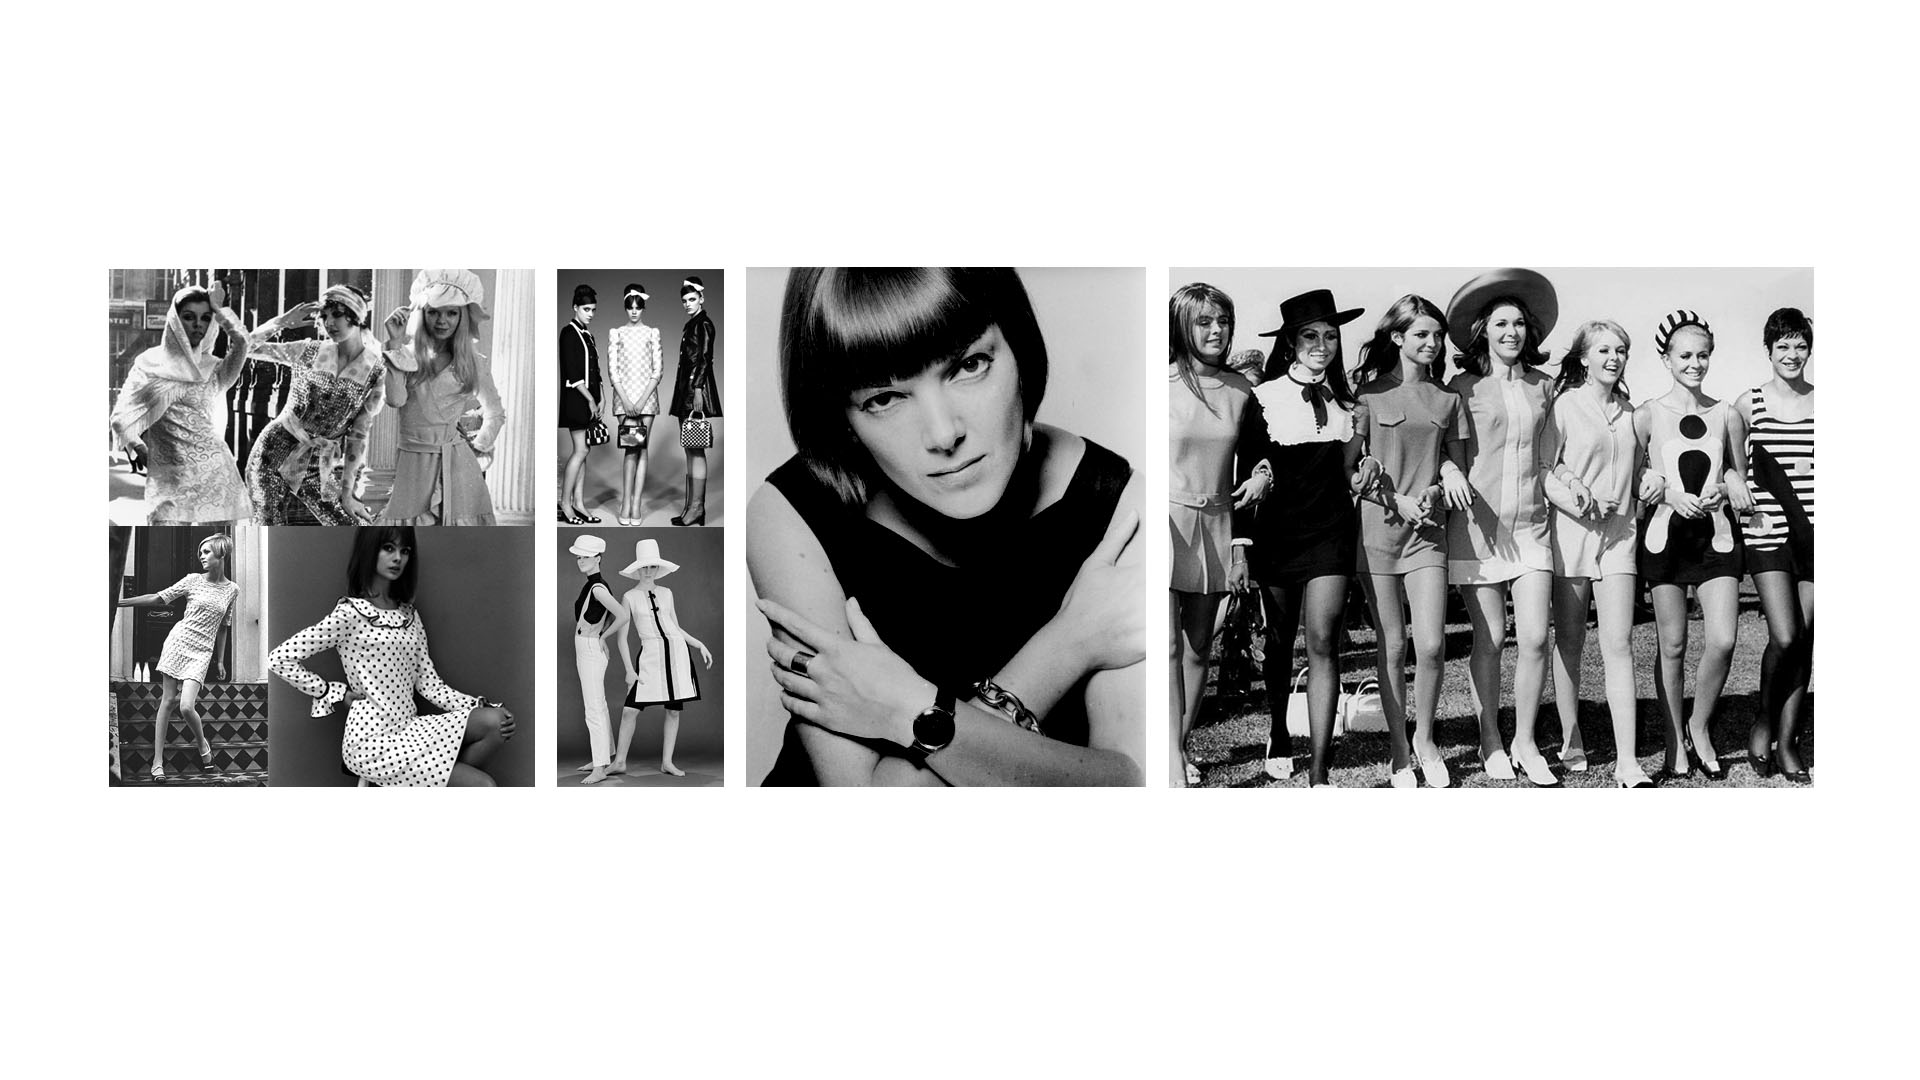 La diseñadora británica alcanzó máximo renombre internacional, en la década de los 60, gracias al lanzamiento de faldas extra cortas y su juvenil moda